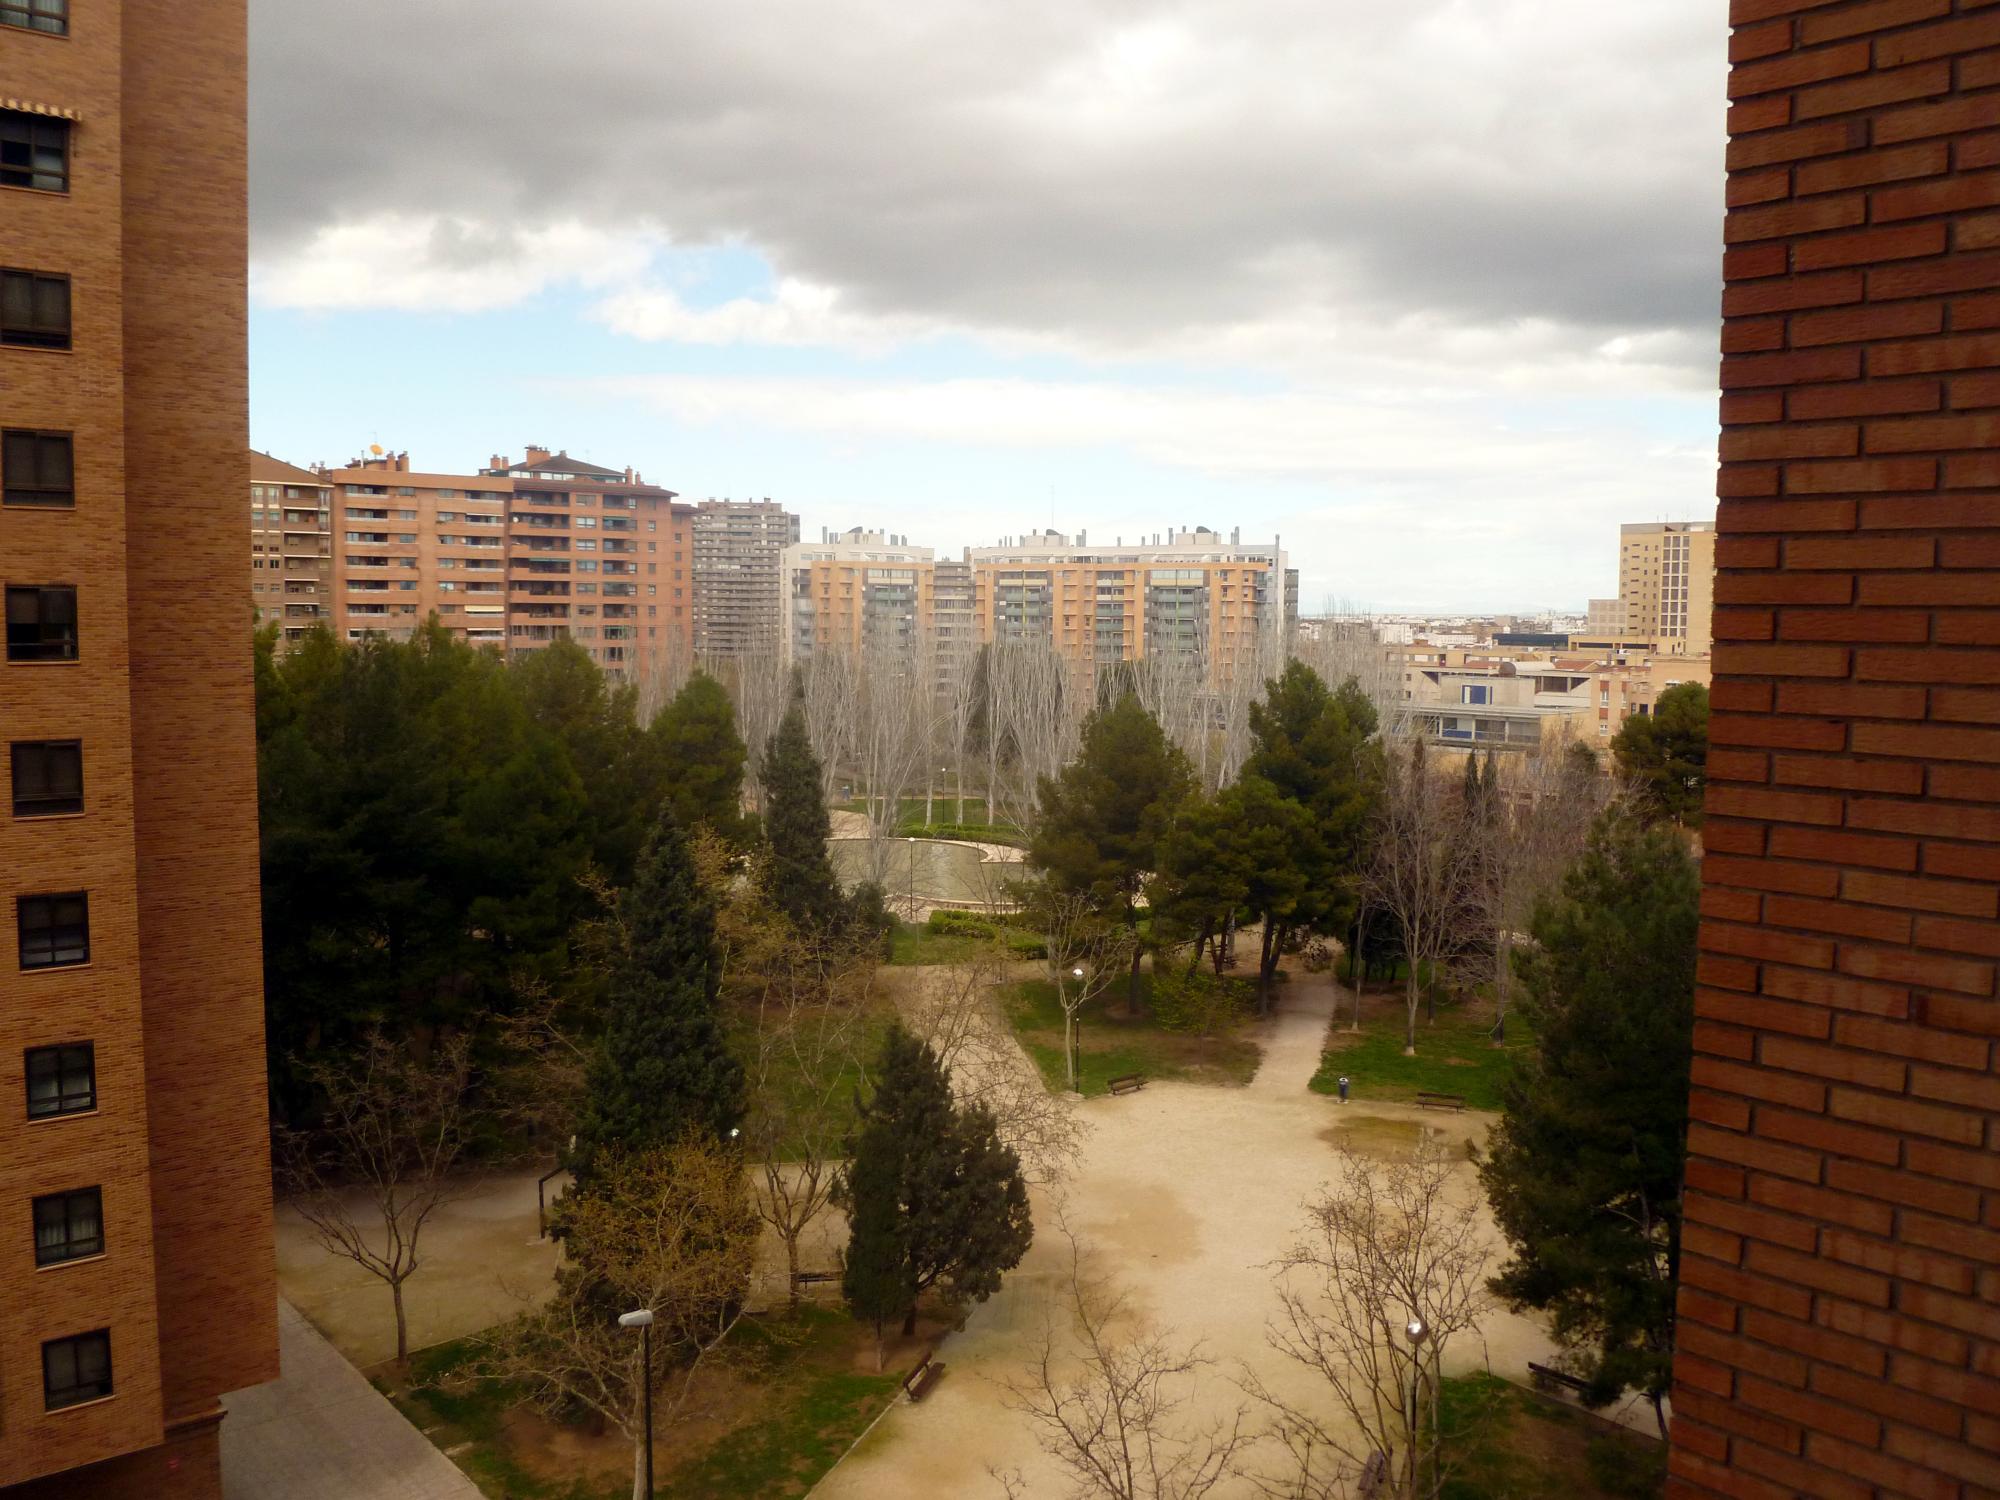 Aragon - Spanish Apartment Block #4